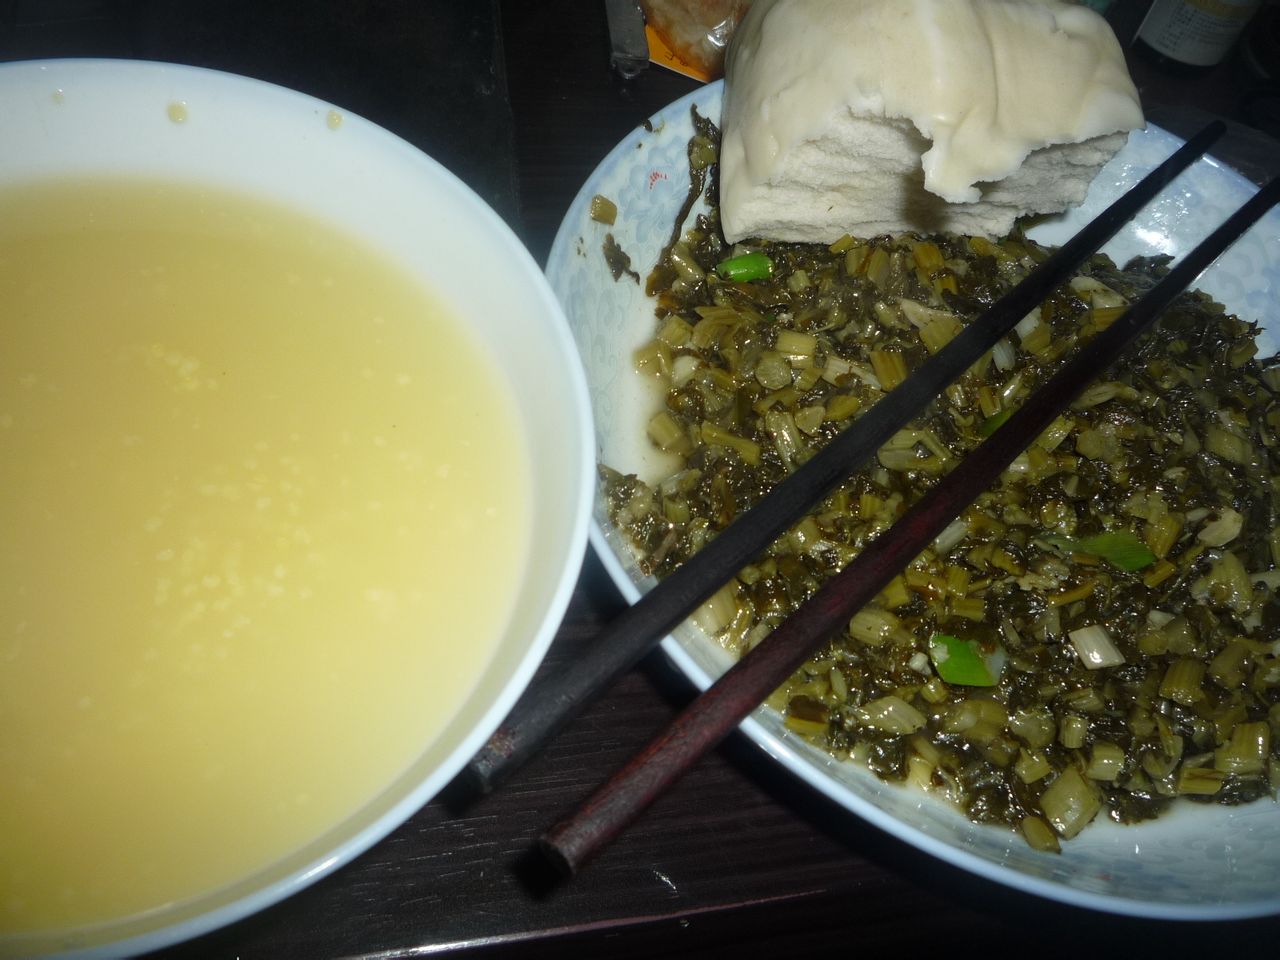 老王说,他的晚餐比较简单,一碗小米粥,一盘咸菜(管一天),二个馒头,够